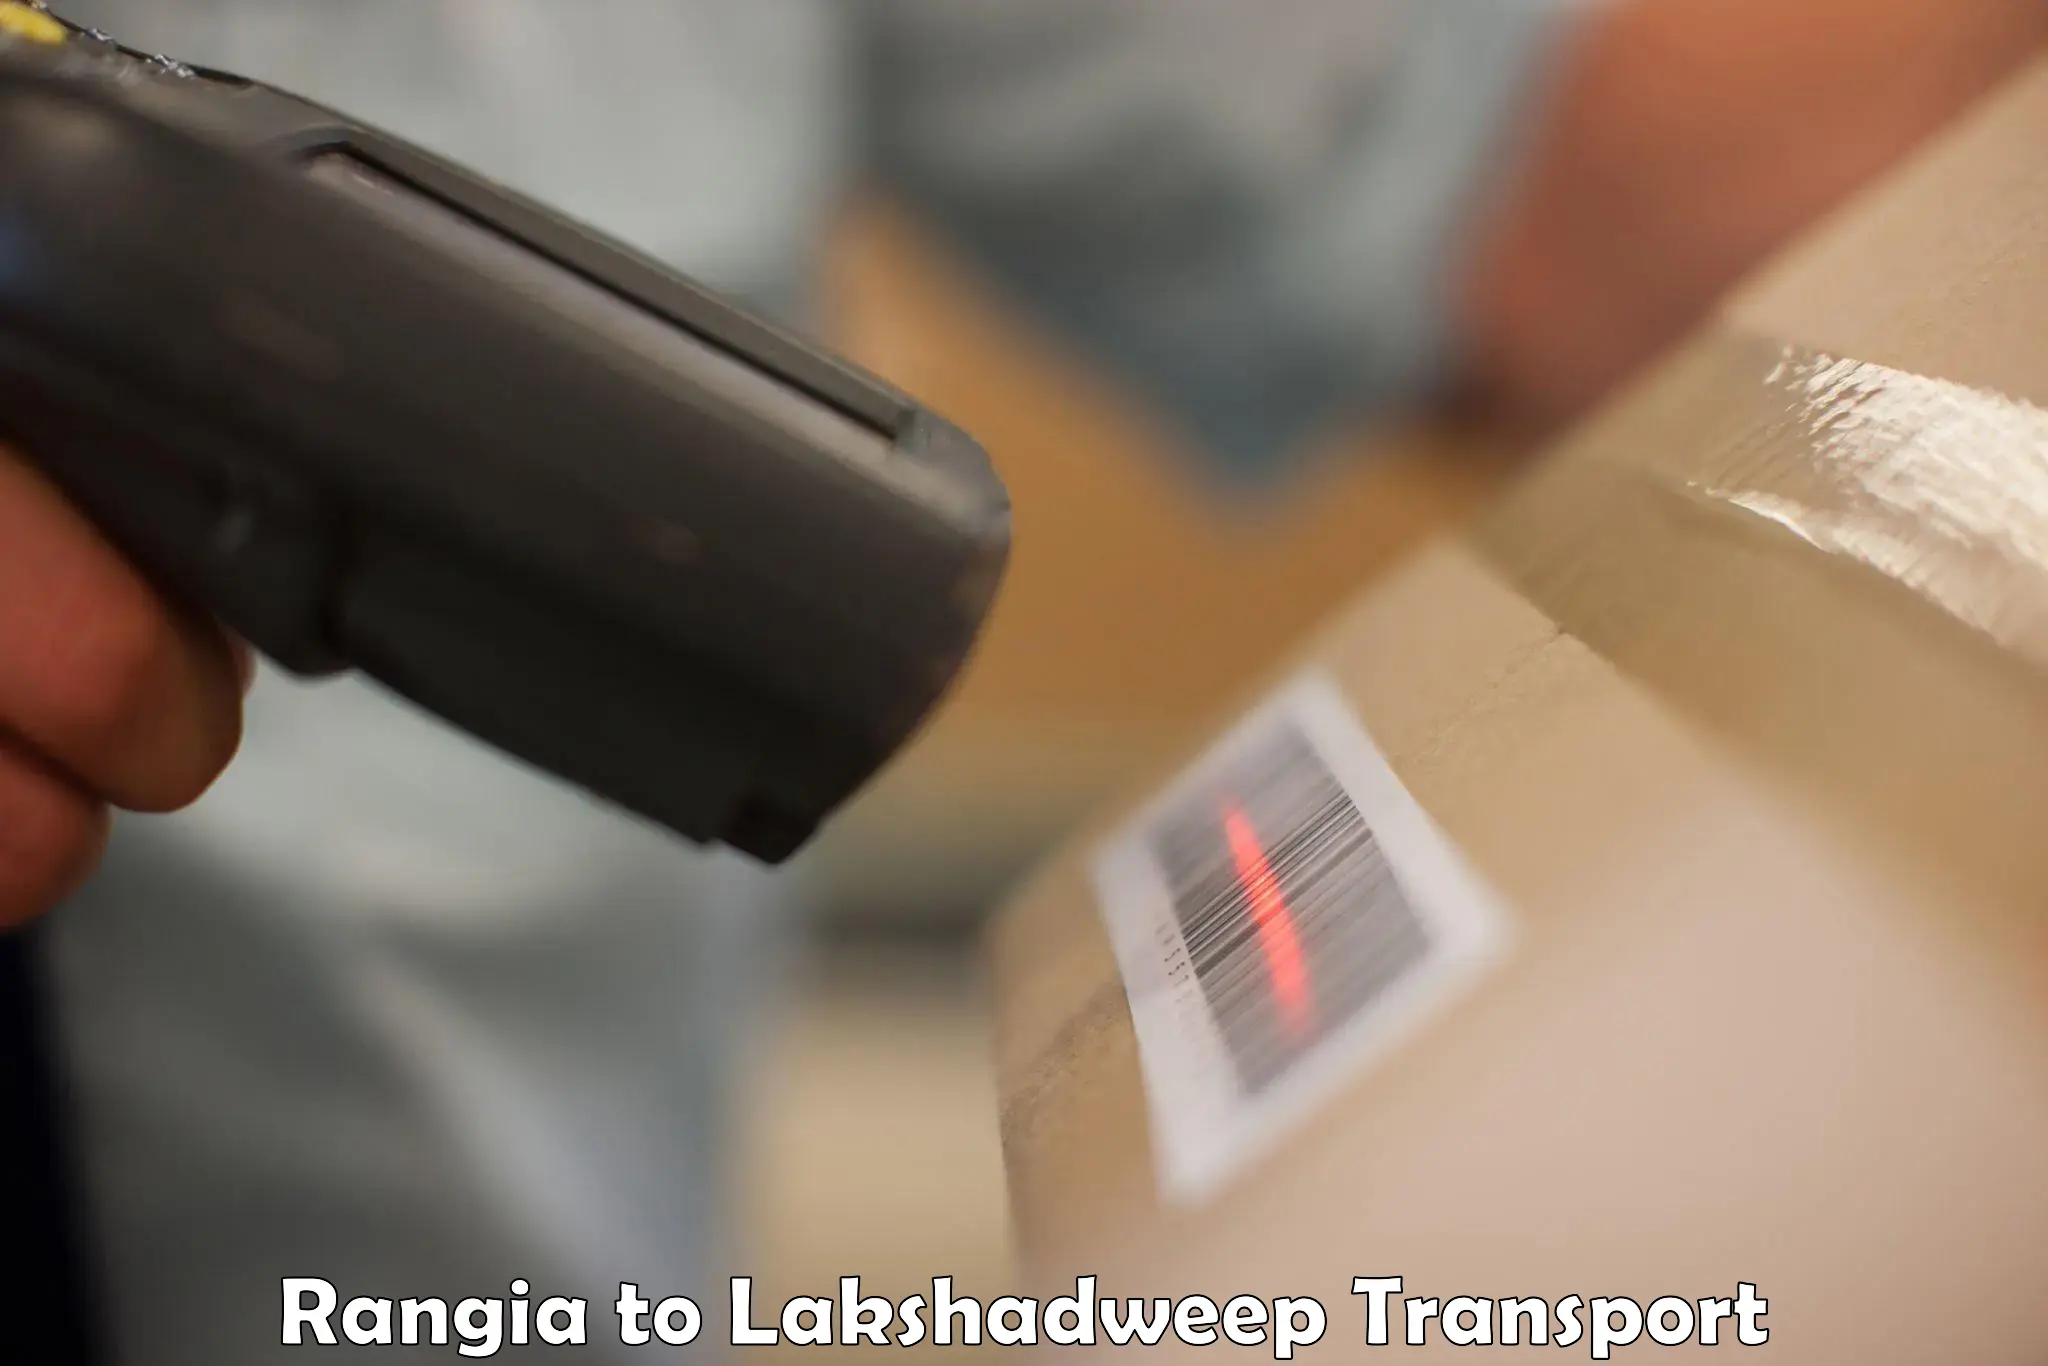 Furniture transport service in Rangia to Lakshadweep